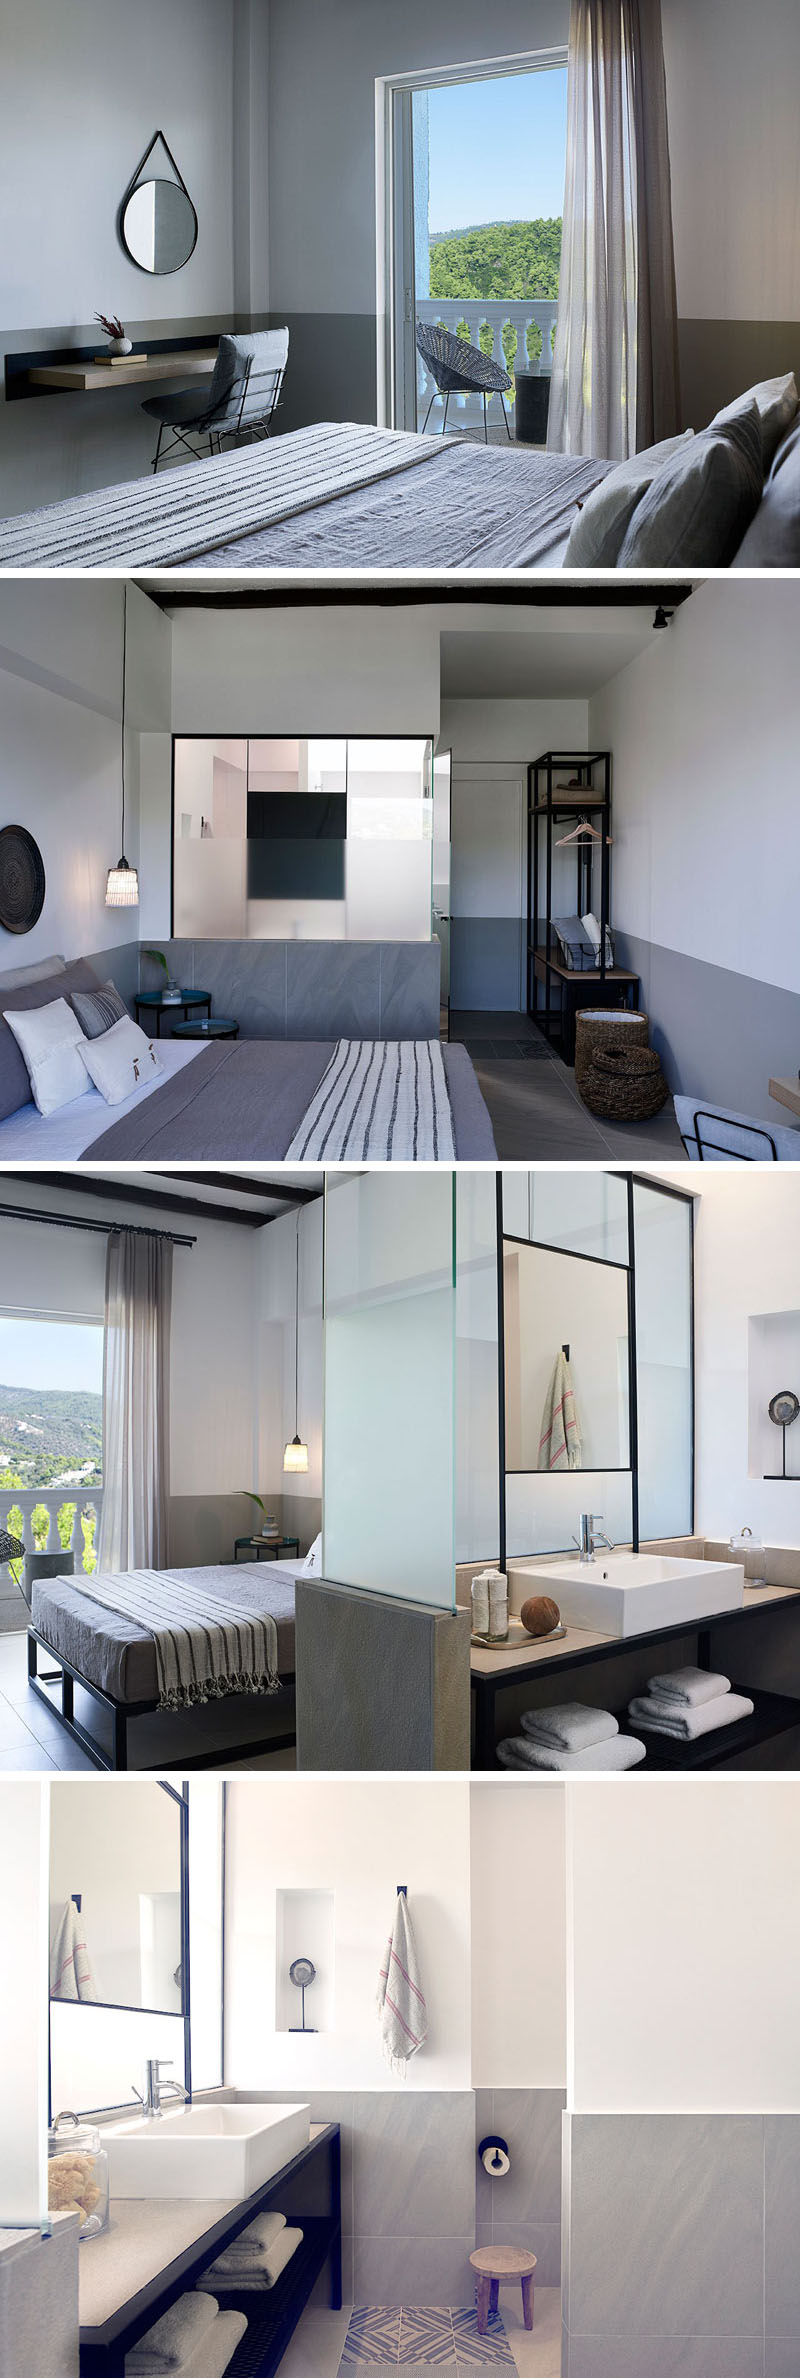 modern-hotel-room-bedroom-design-210217-1010-05